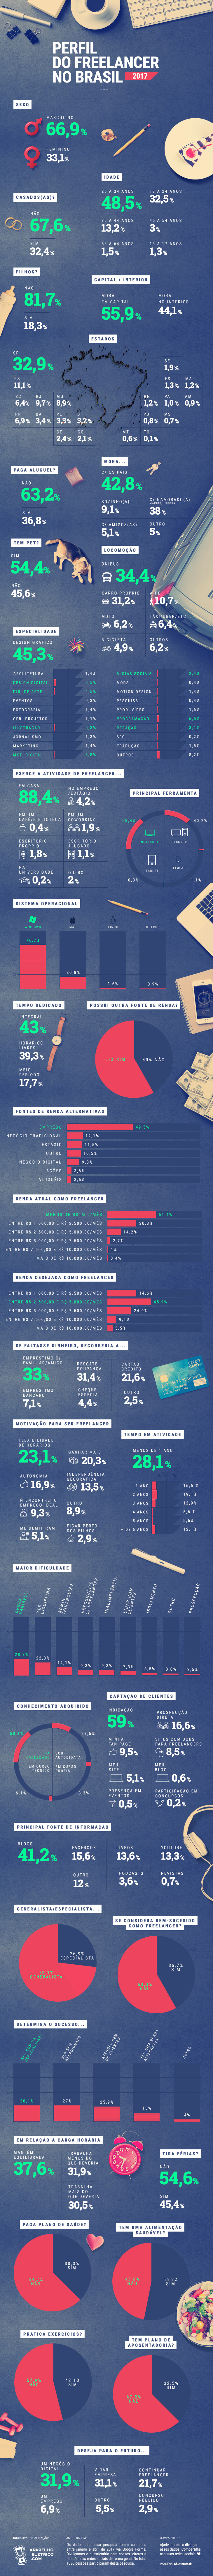 infográfico com resultados da pesquisa sobre o perfil do freelancer no brasil em 2017